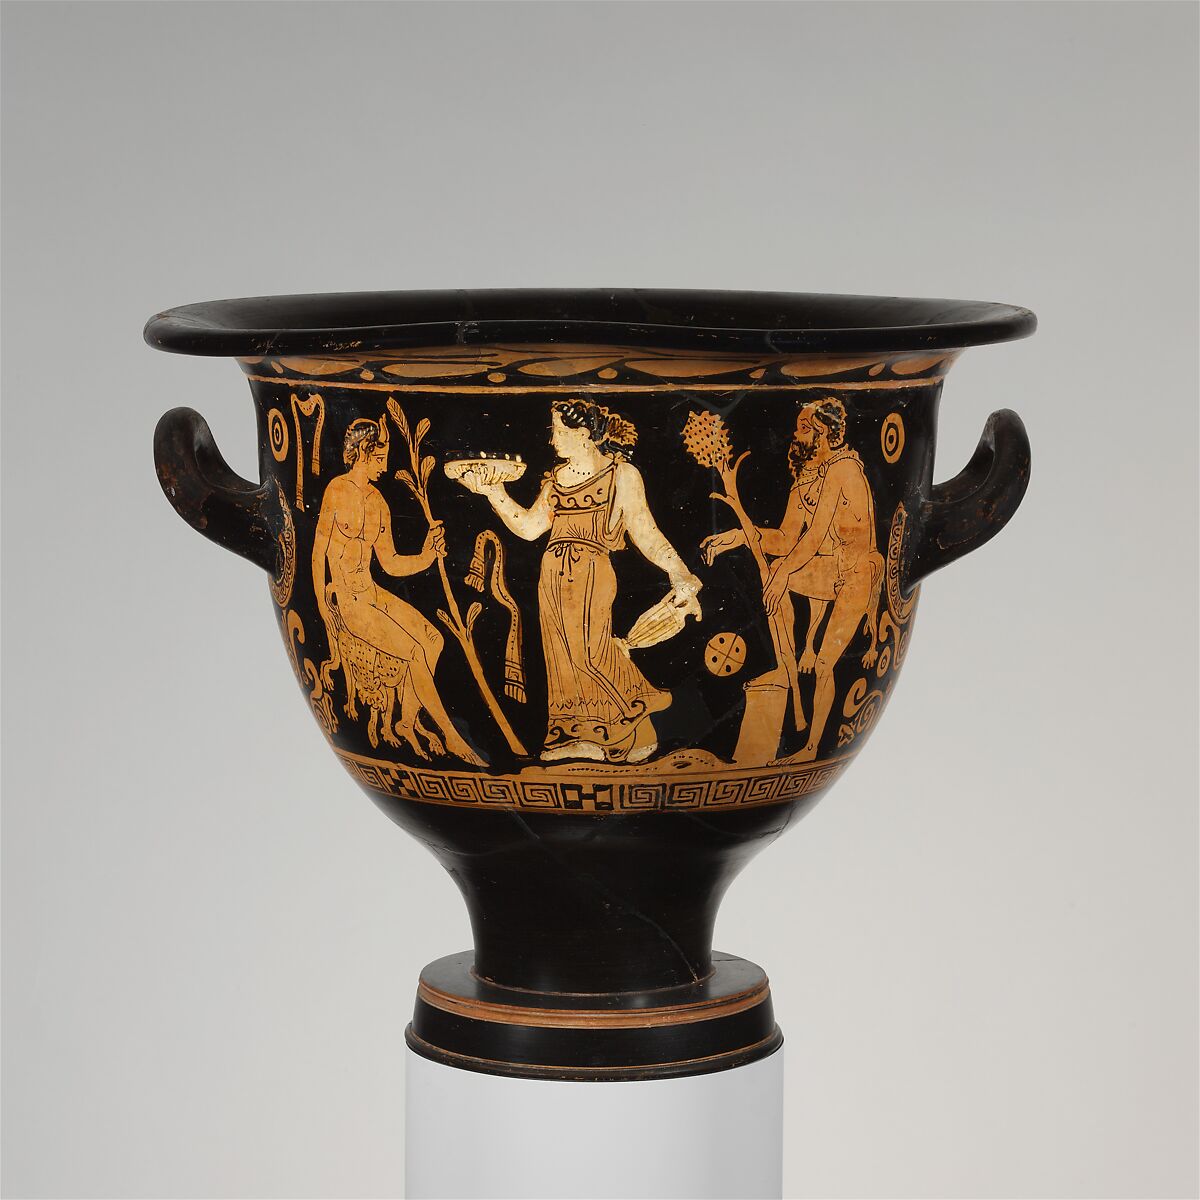 Terracotta bell-krater (mixing bowl), Terracotta, Etruscan, Faliscan 